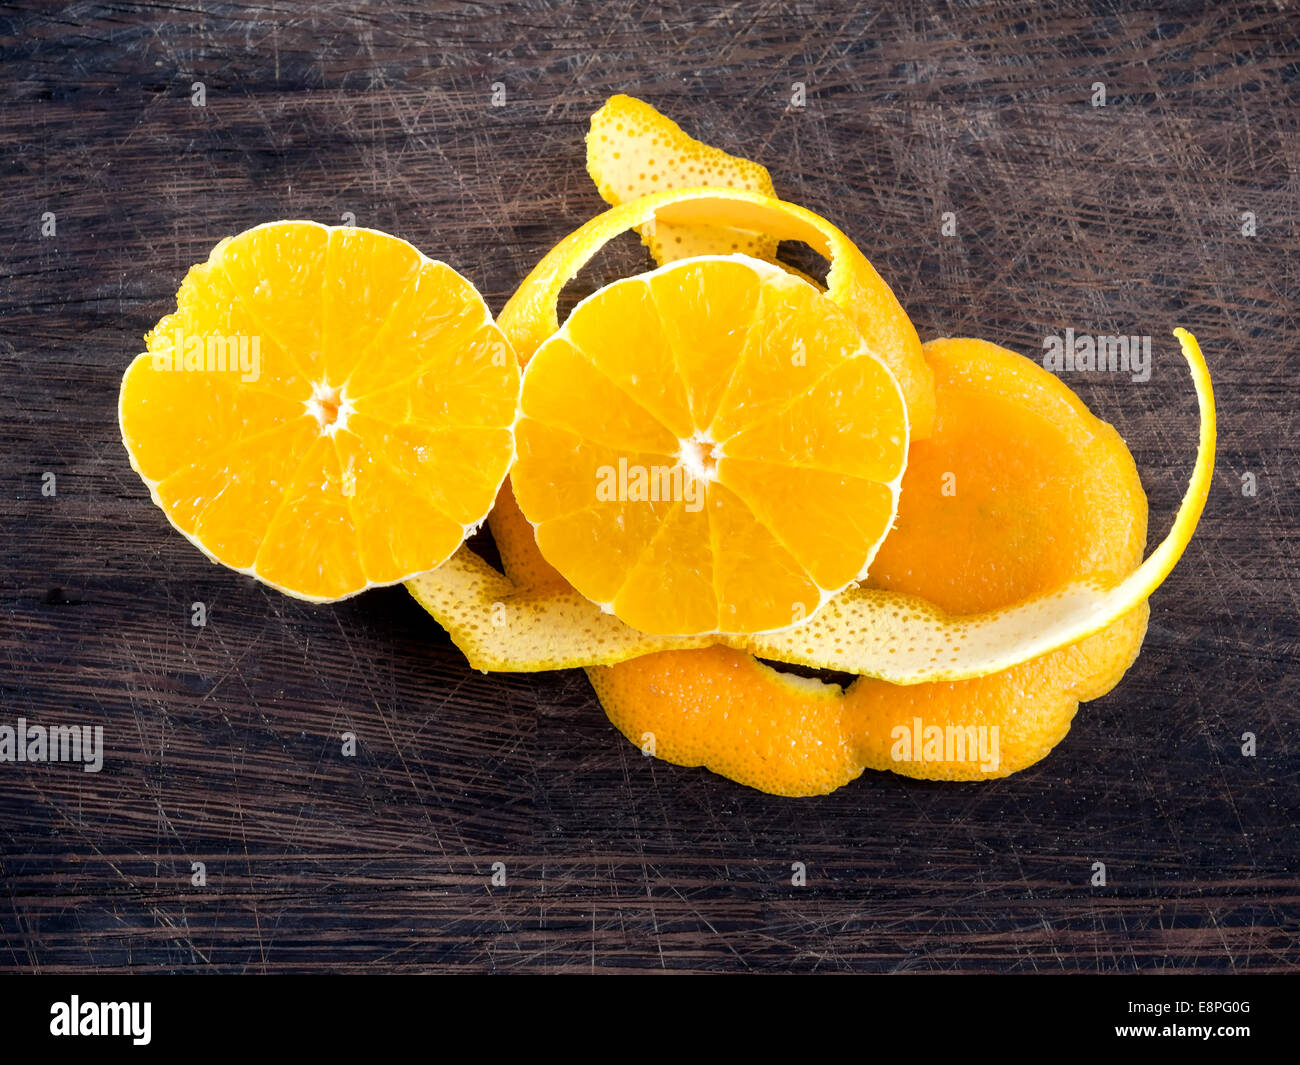 Le zeste d'Orange prêt à cuire Banque D'Images